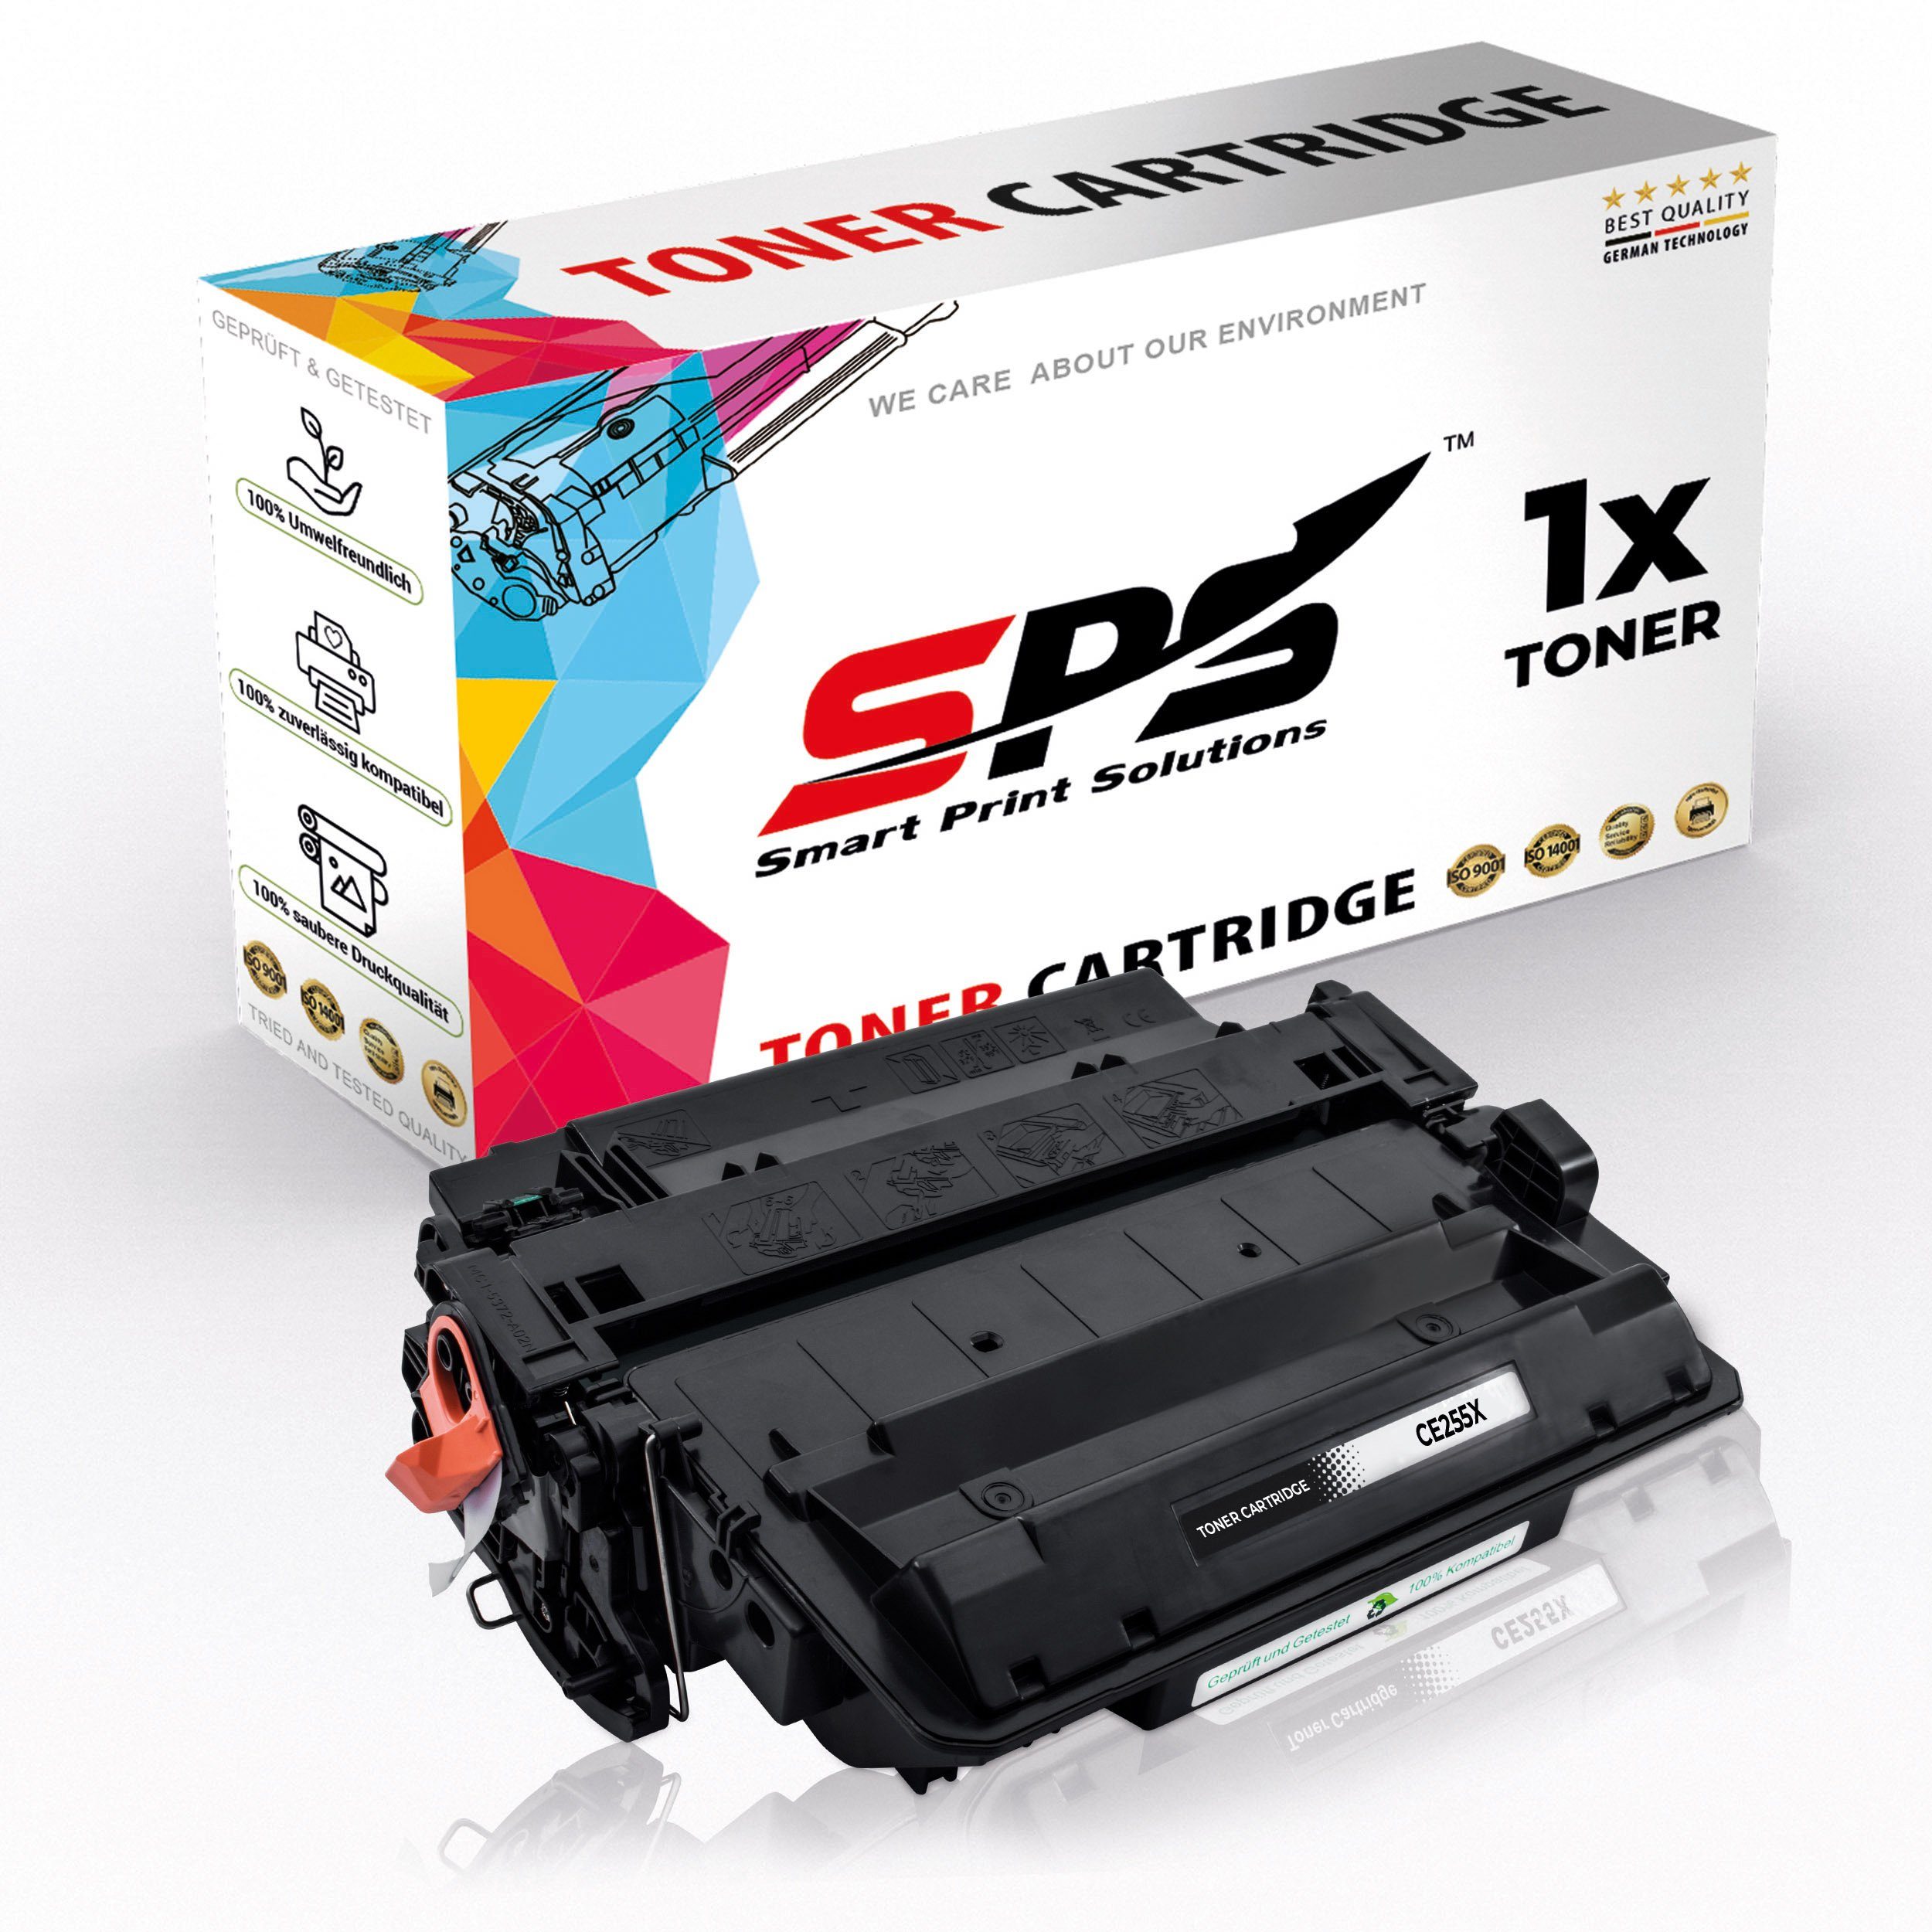 Tonerkartusche Enterprise 500 für Pack) (1er SPS Kompatibel HP MFP, Laserjet